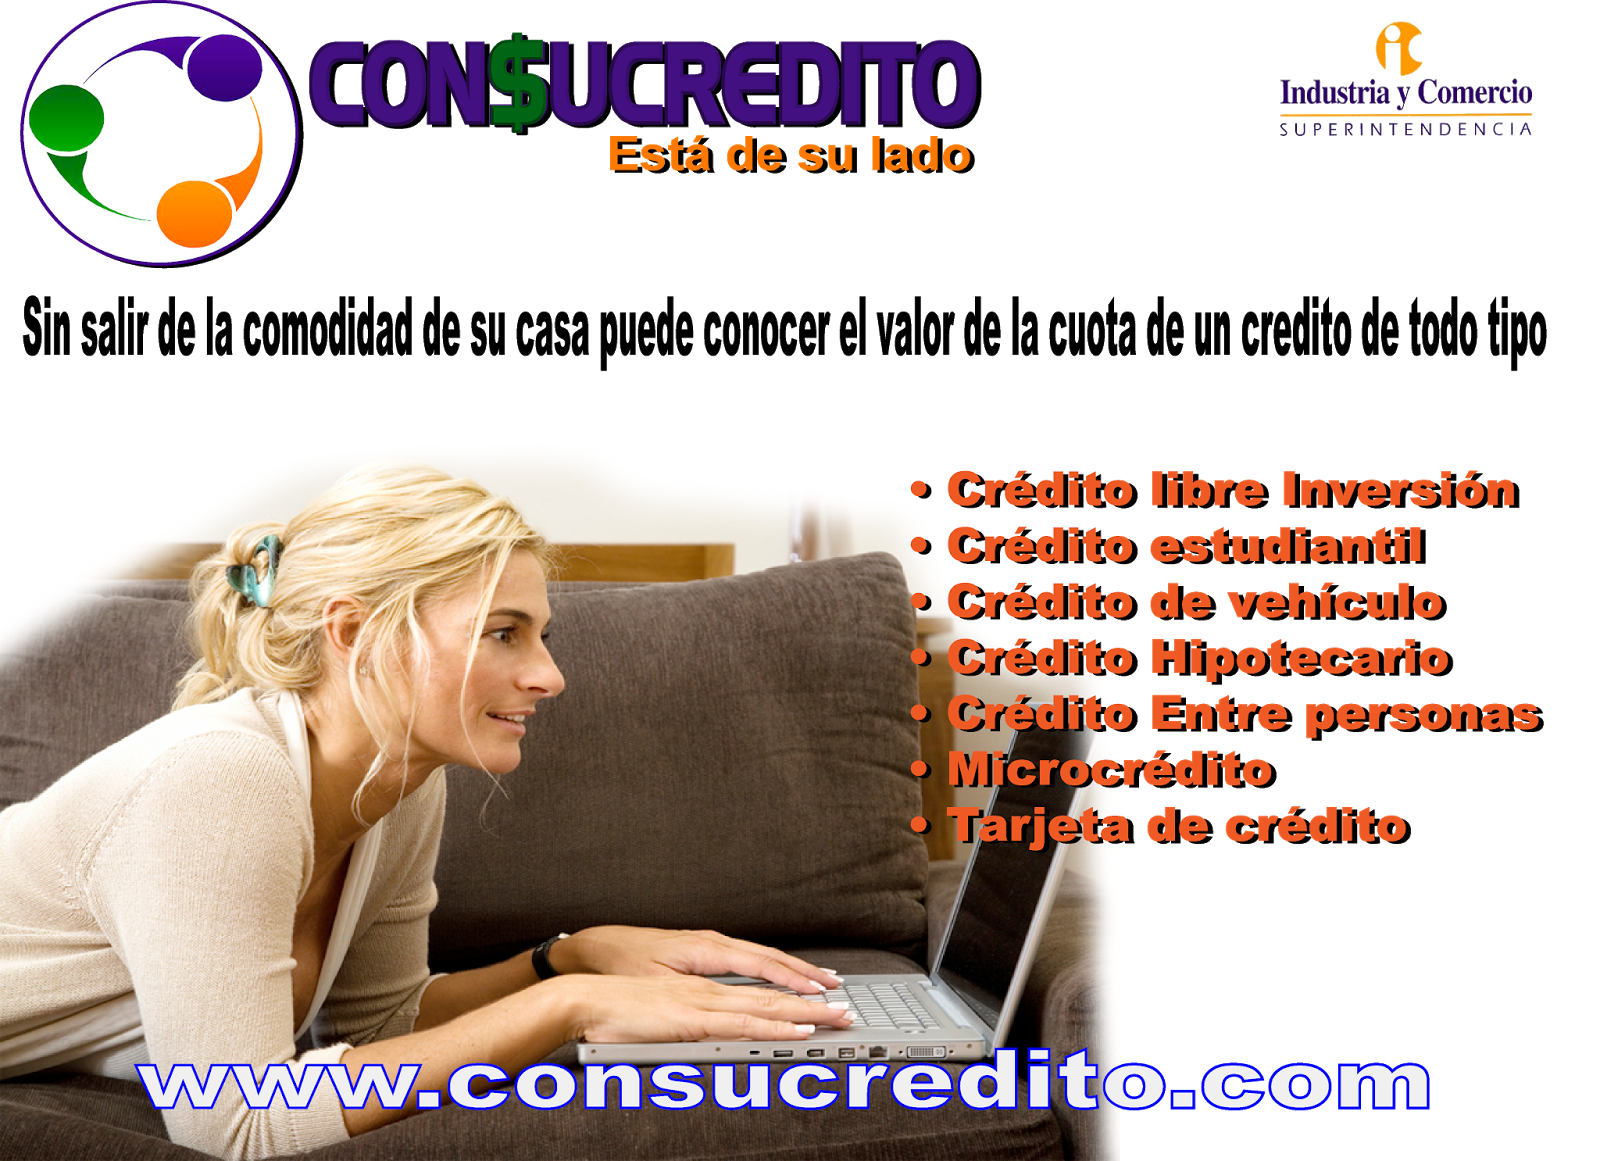 Consucrédito el simulador de crédito http://www.consucredito.com